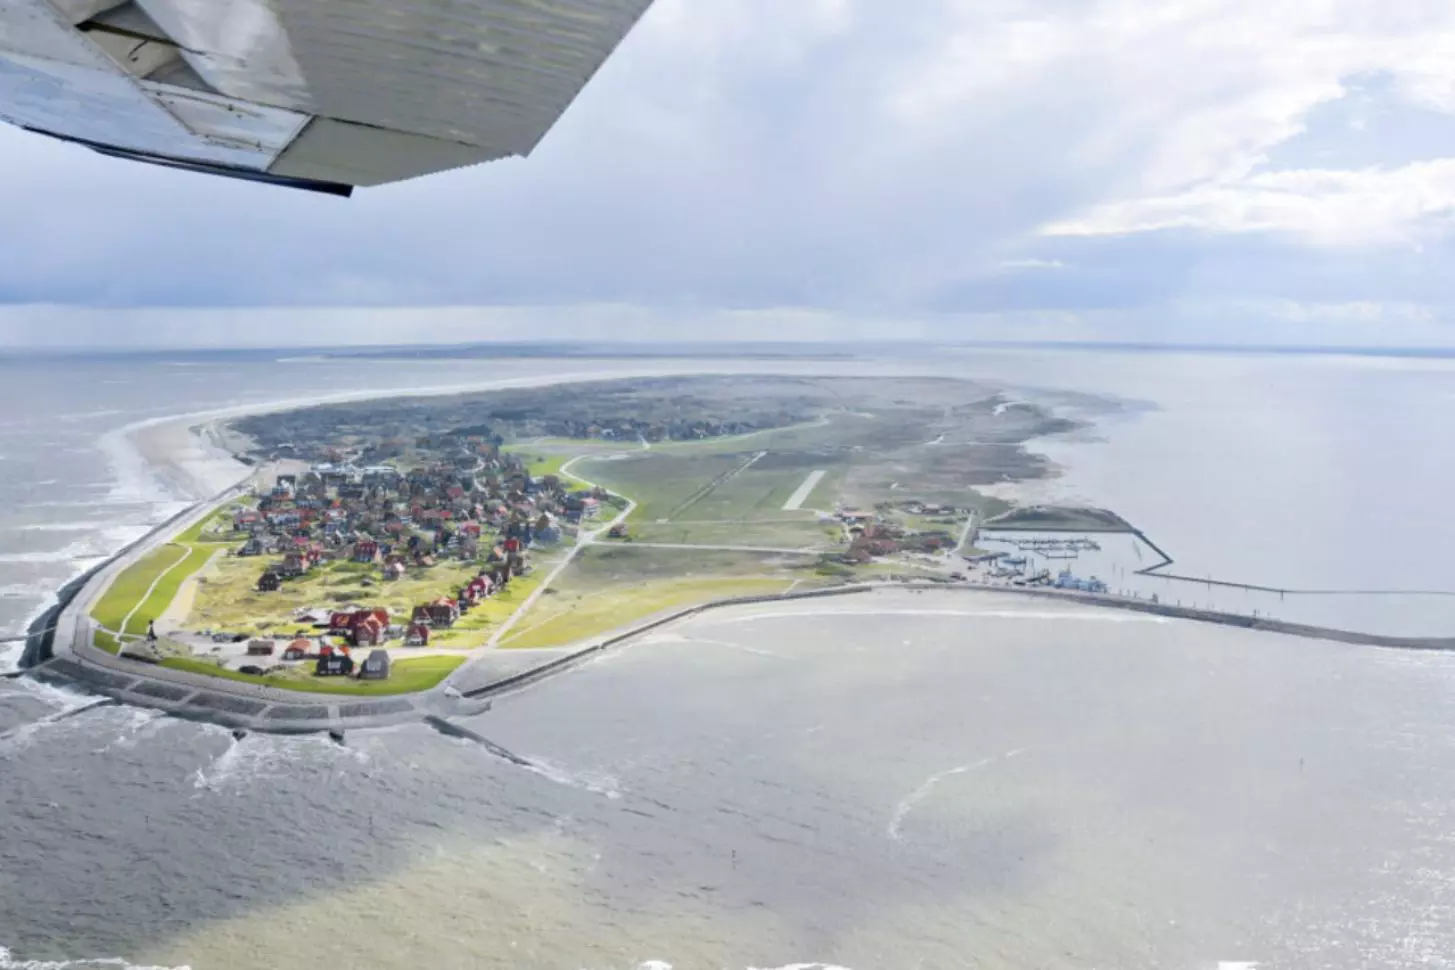 Ein einziges Flugzeug, das nur vier Plätze und einen Motor hat: Eine Cessna 172 pendelt ständig von und zur ostfriesischen Insel Baltrum. Sie gewährleistet die Versorgung der kleinen Insel und ihrer Bewohner und Touristen mit allem Notwendigen aus der Luft.